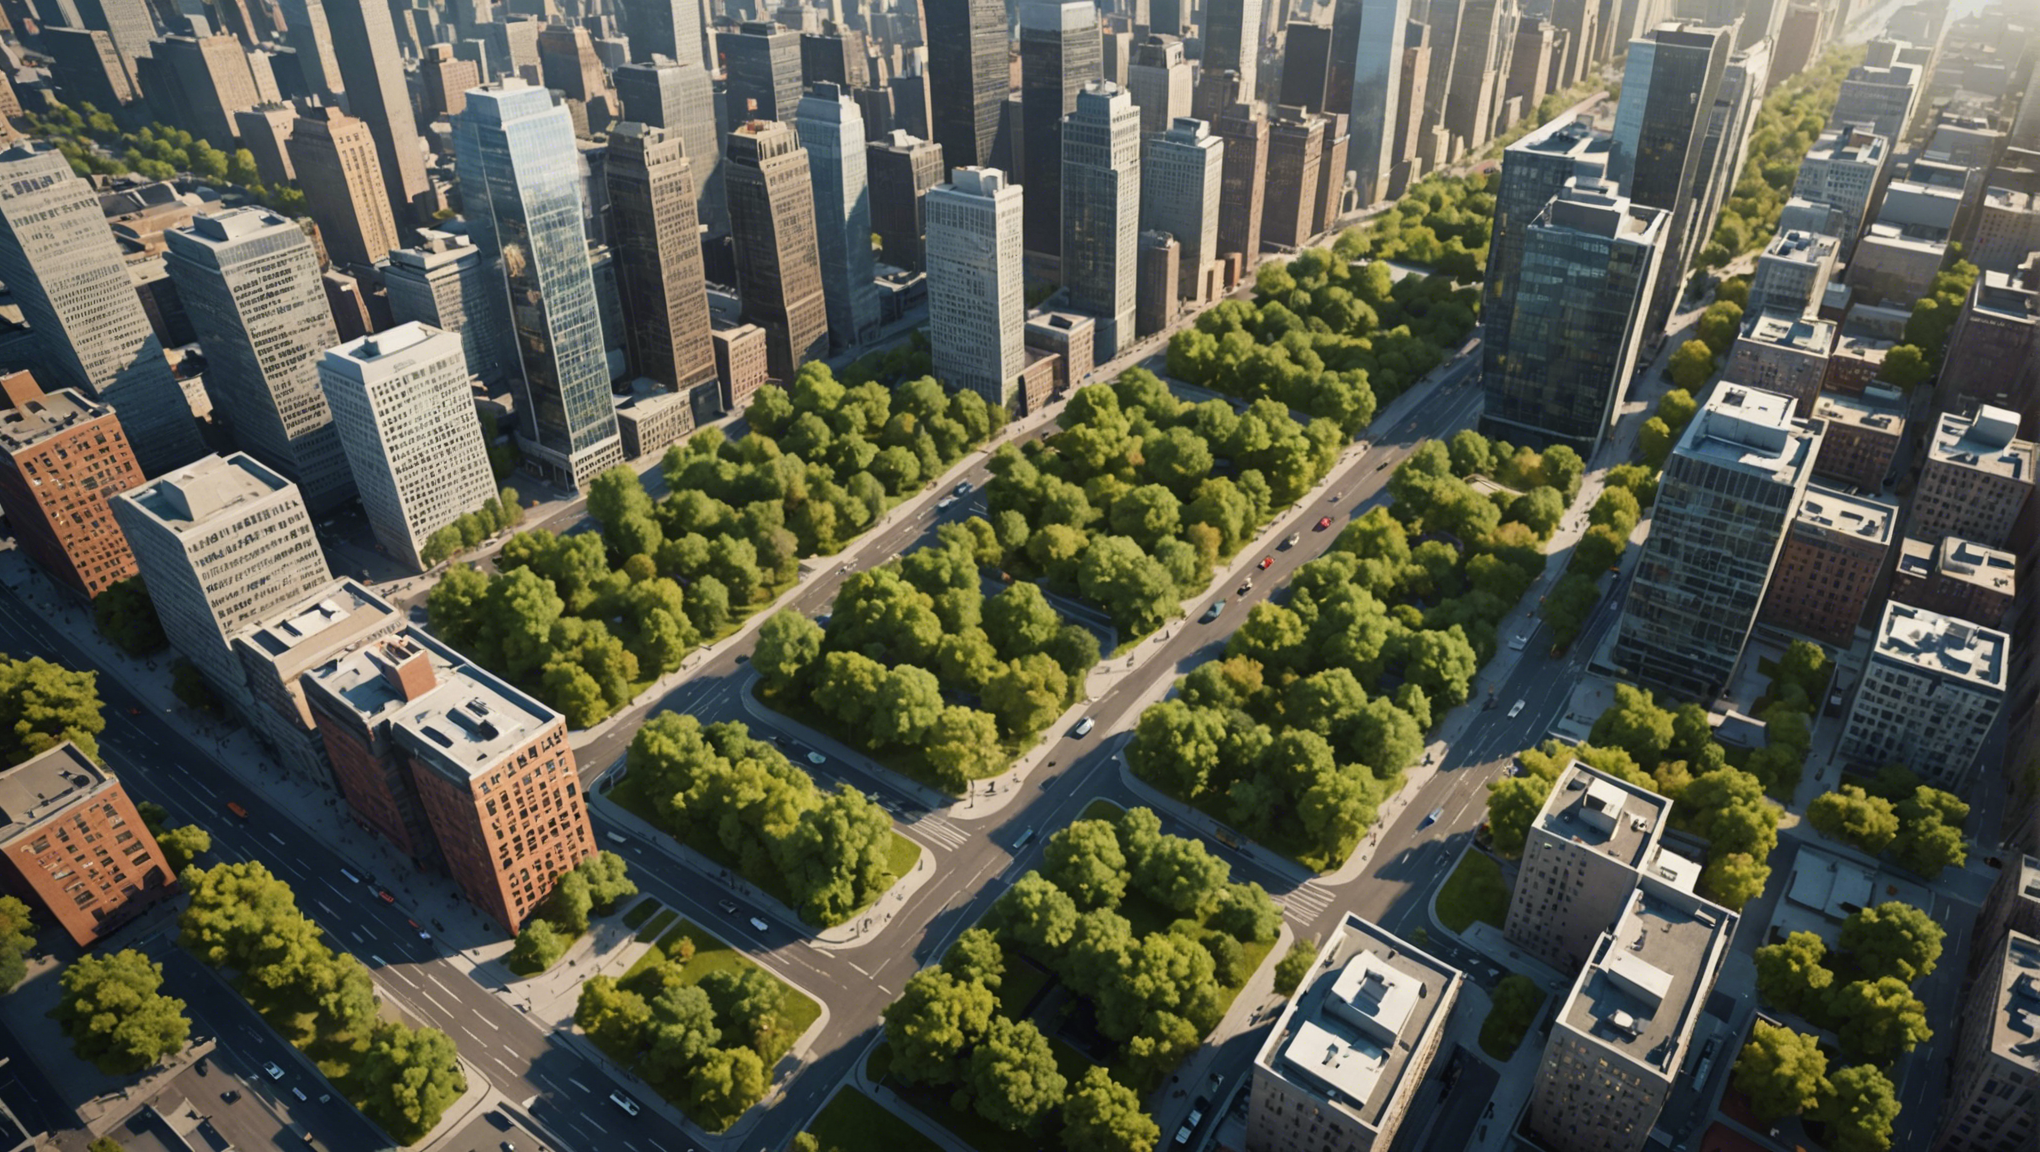 découvrez comment améliorer la qualité de vie en ville en optimisant l'écosystème urbain. des solutions pour une ville plus agréable et durable.